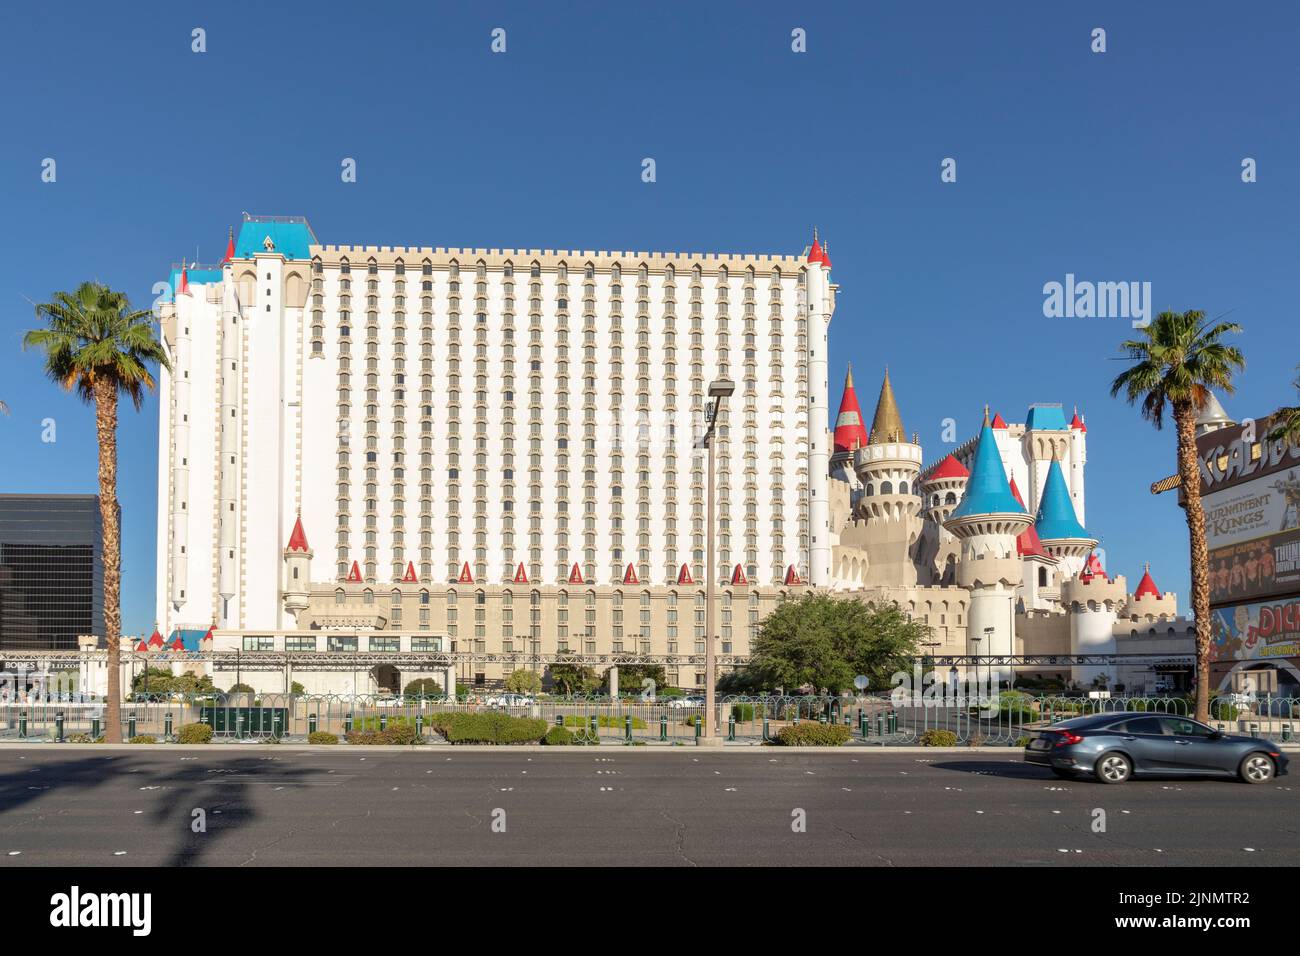 Las Vegas, EE.UU. - 25 de mayo de 2022: Excalibur Hotel and Casino en Las Vegas, Nevada. Su propietario - MGM Resorts informó una fuerte ganancia de ingresos netos de 43 por ciento Foto de stock